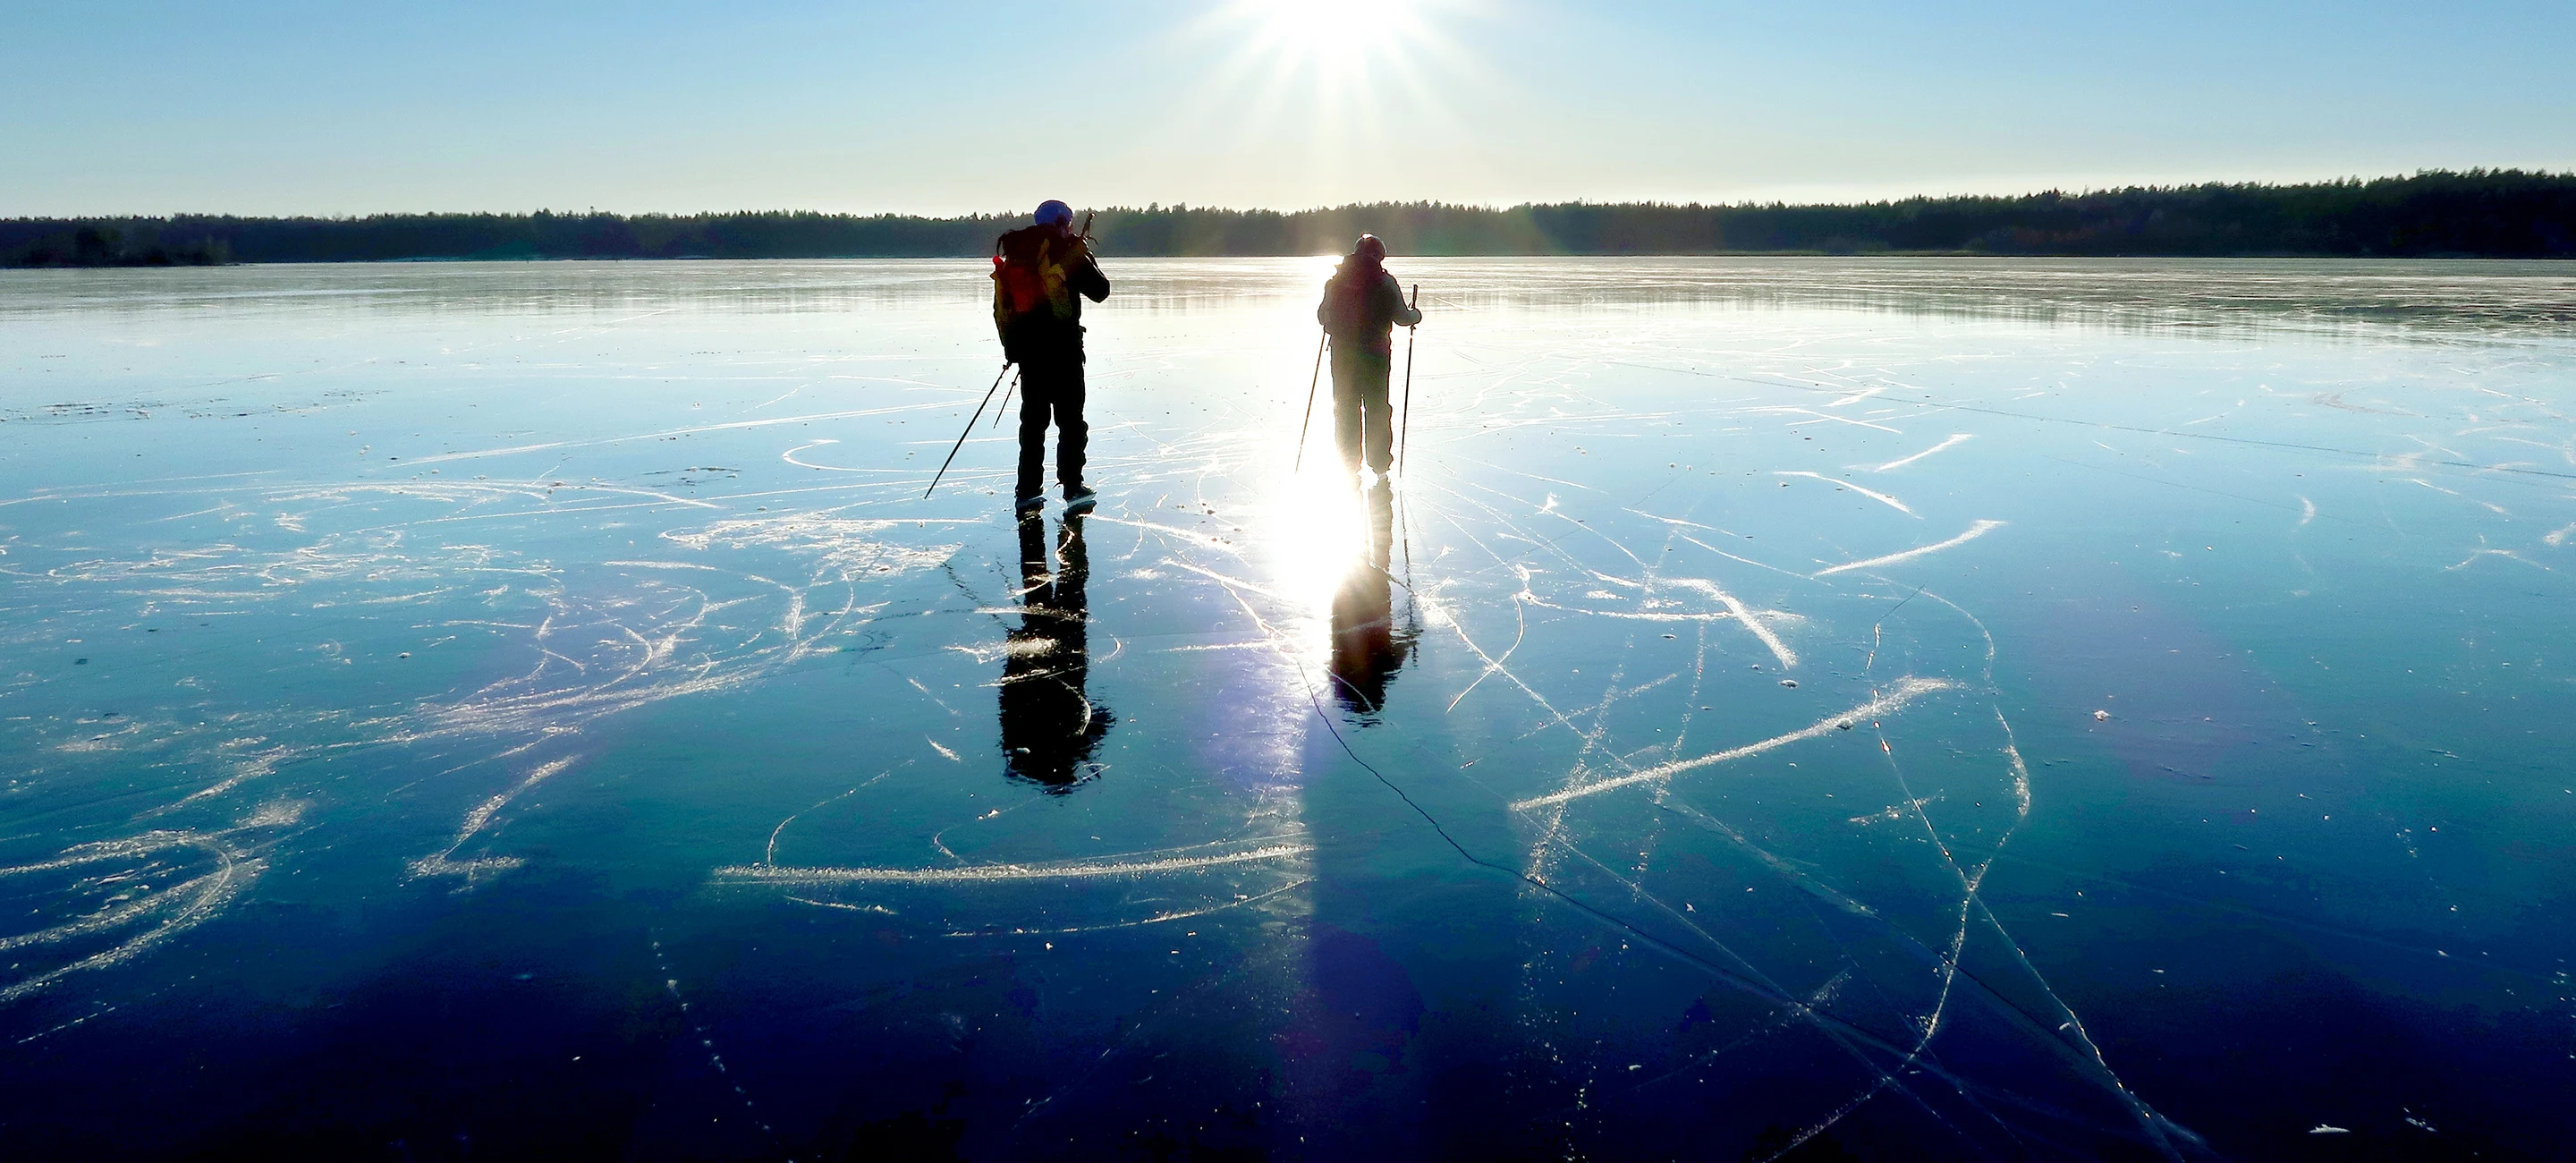 Skridskoåkare på isen i solljus